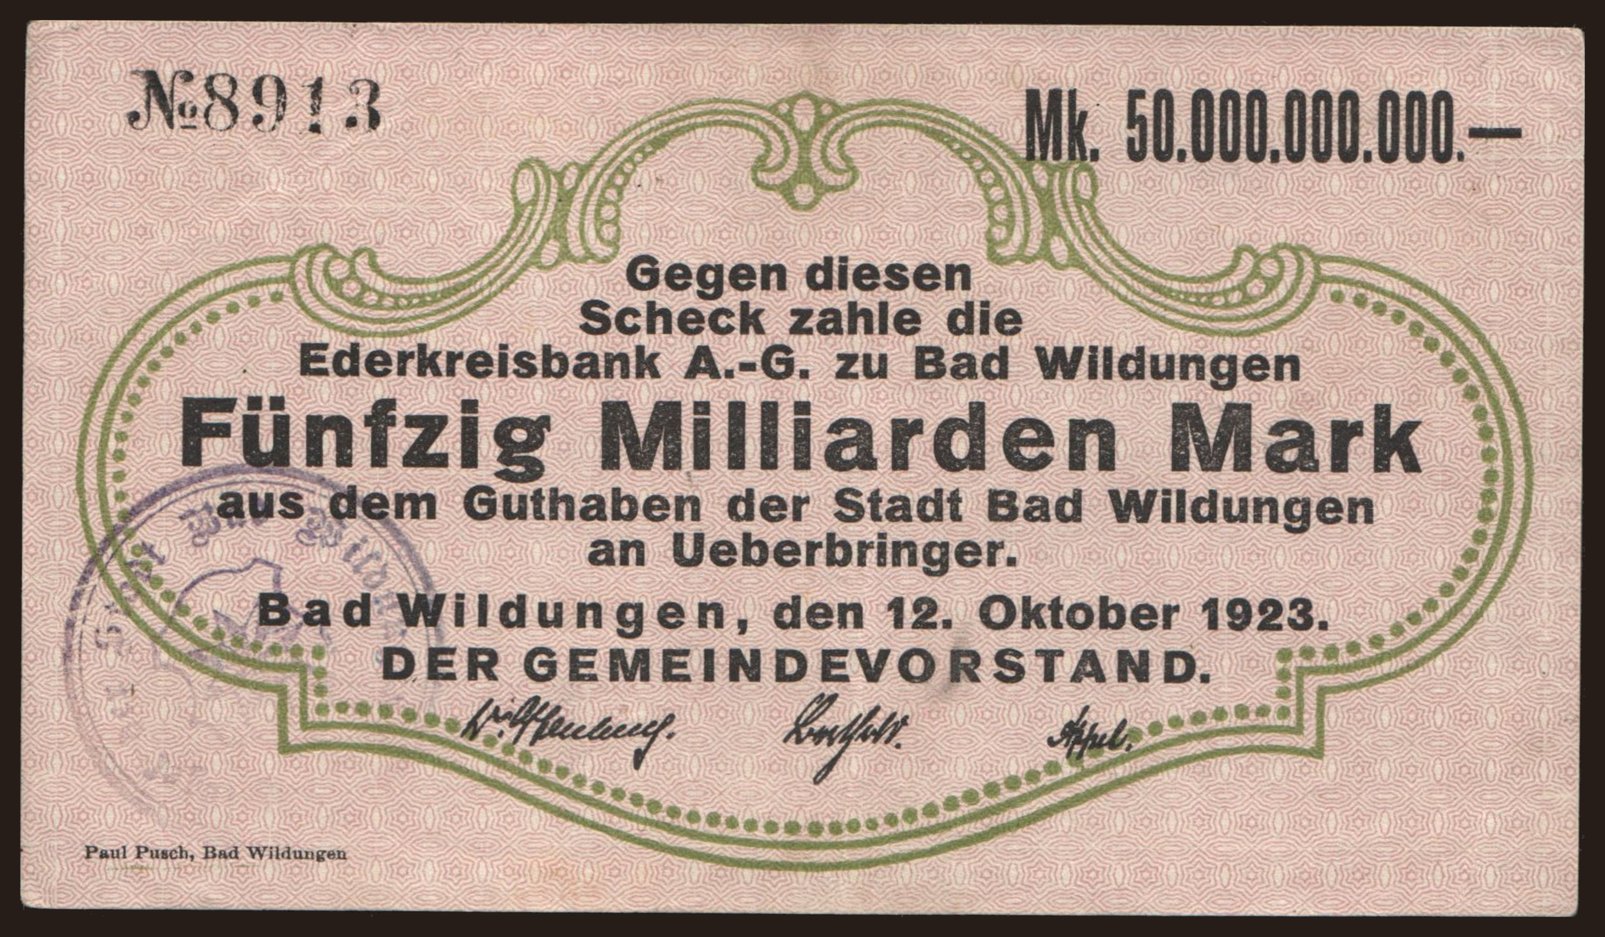 Bad Wildungen/ Stadt, 50.000.000.000 Mark, 1923